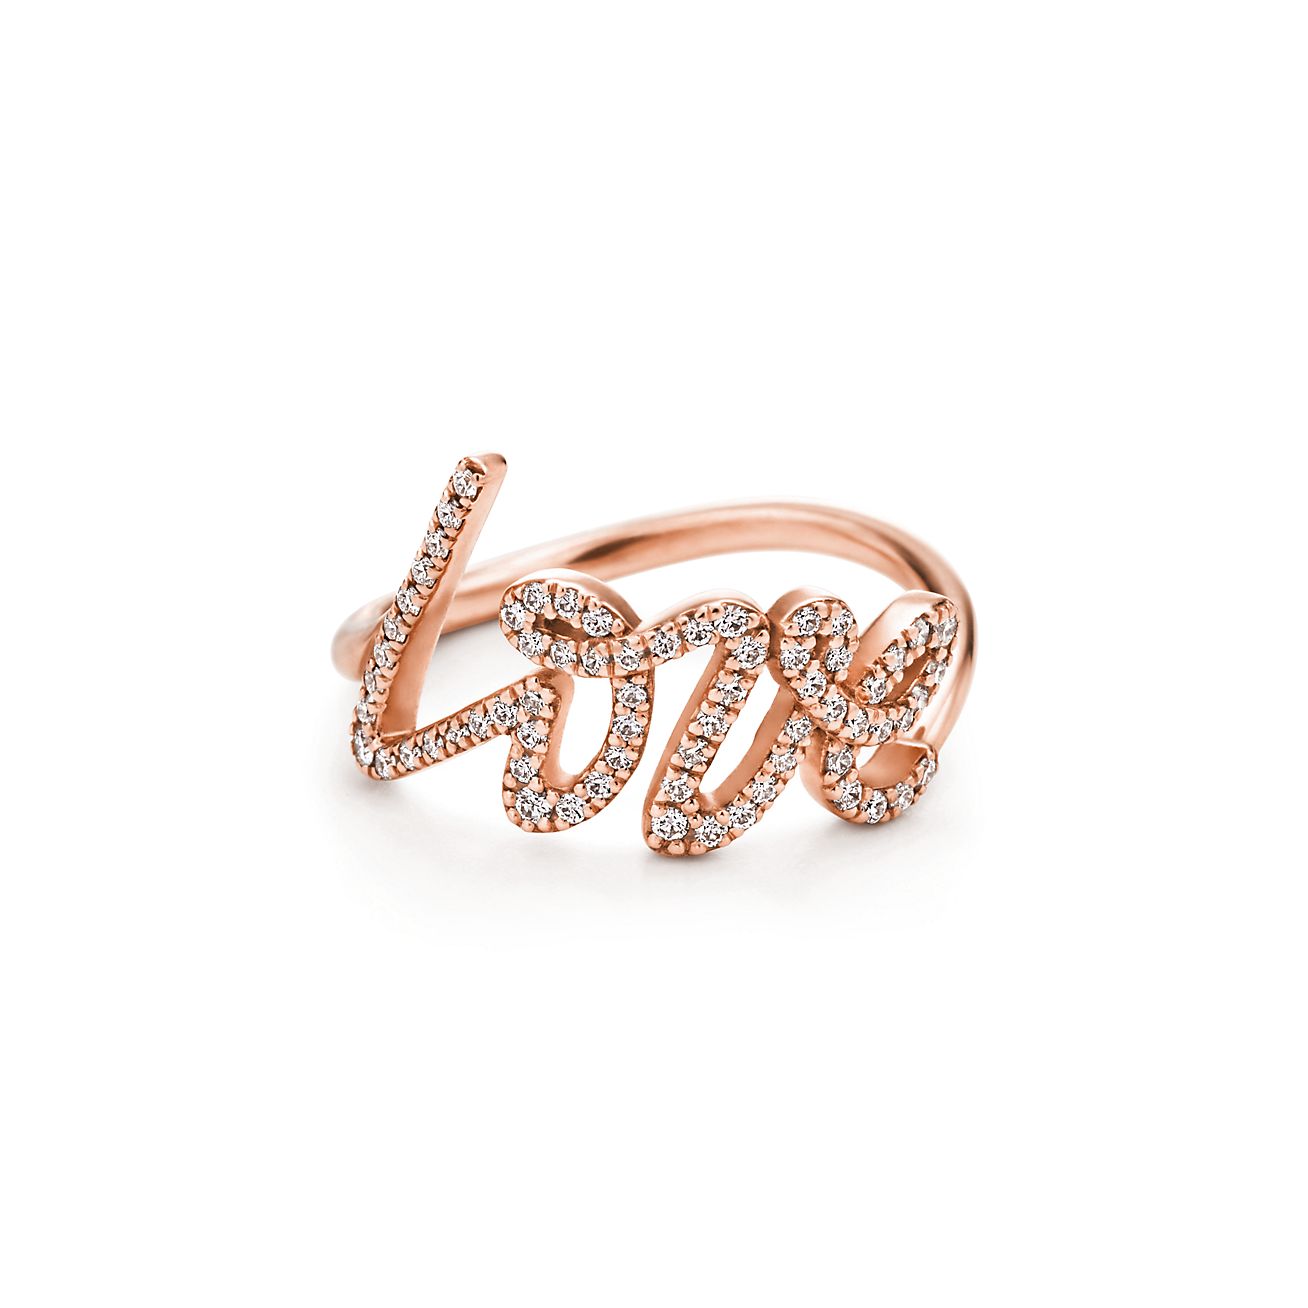 Anillo Love Paloma's en oro rosa con diamantes, pequeño Tiffany & Co.